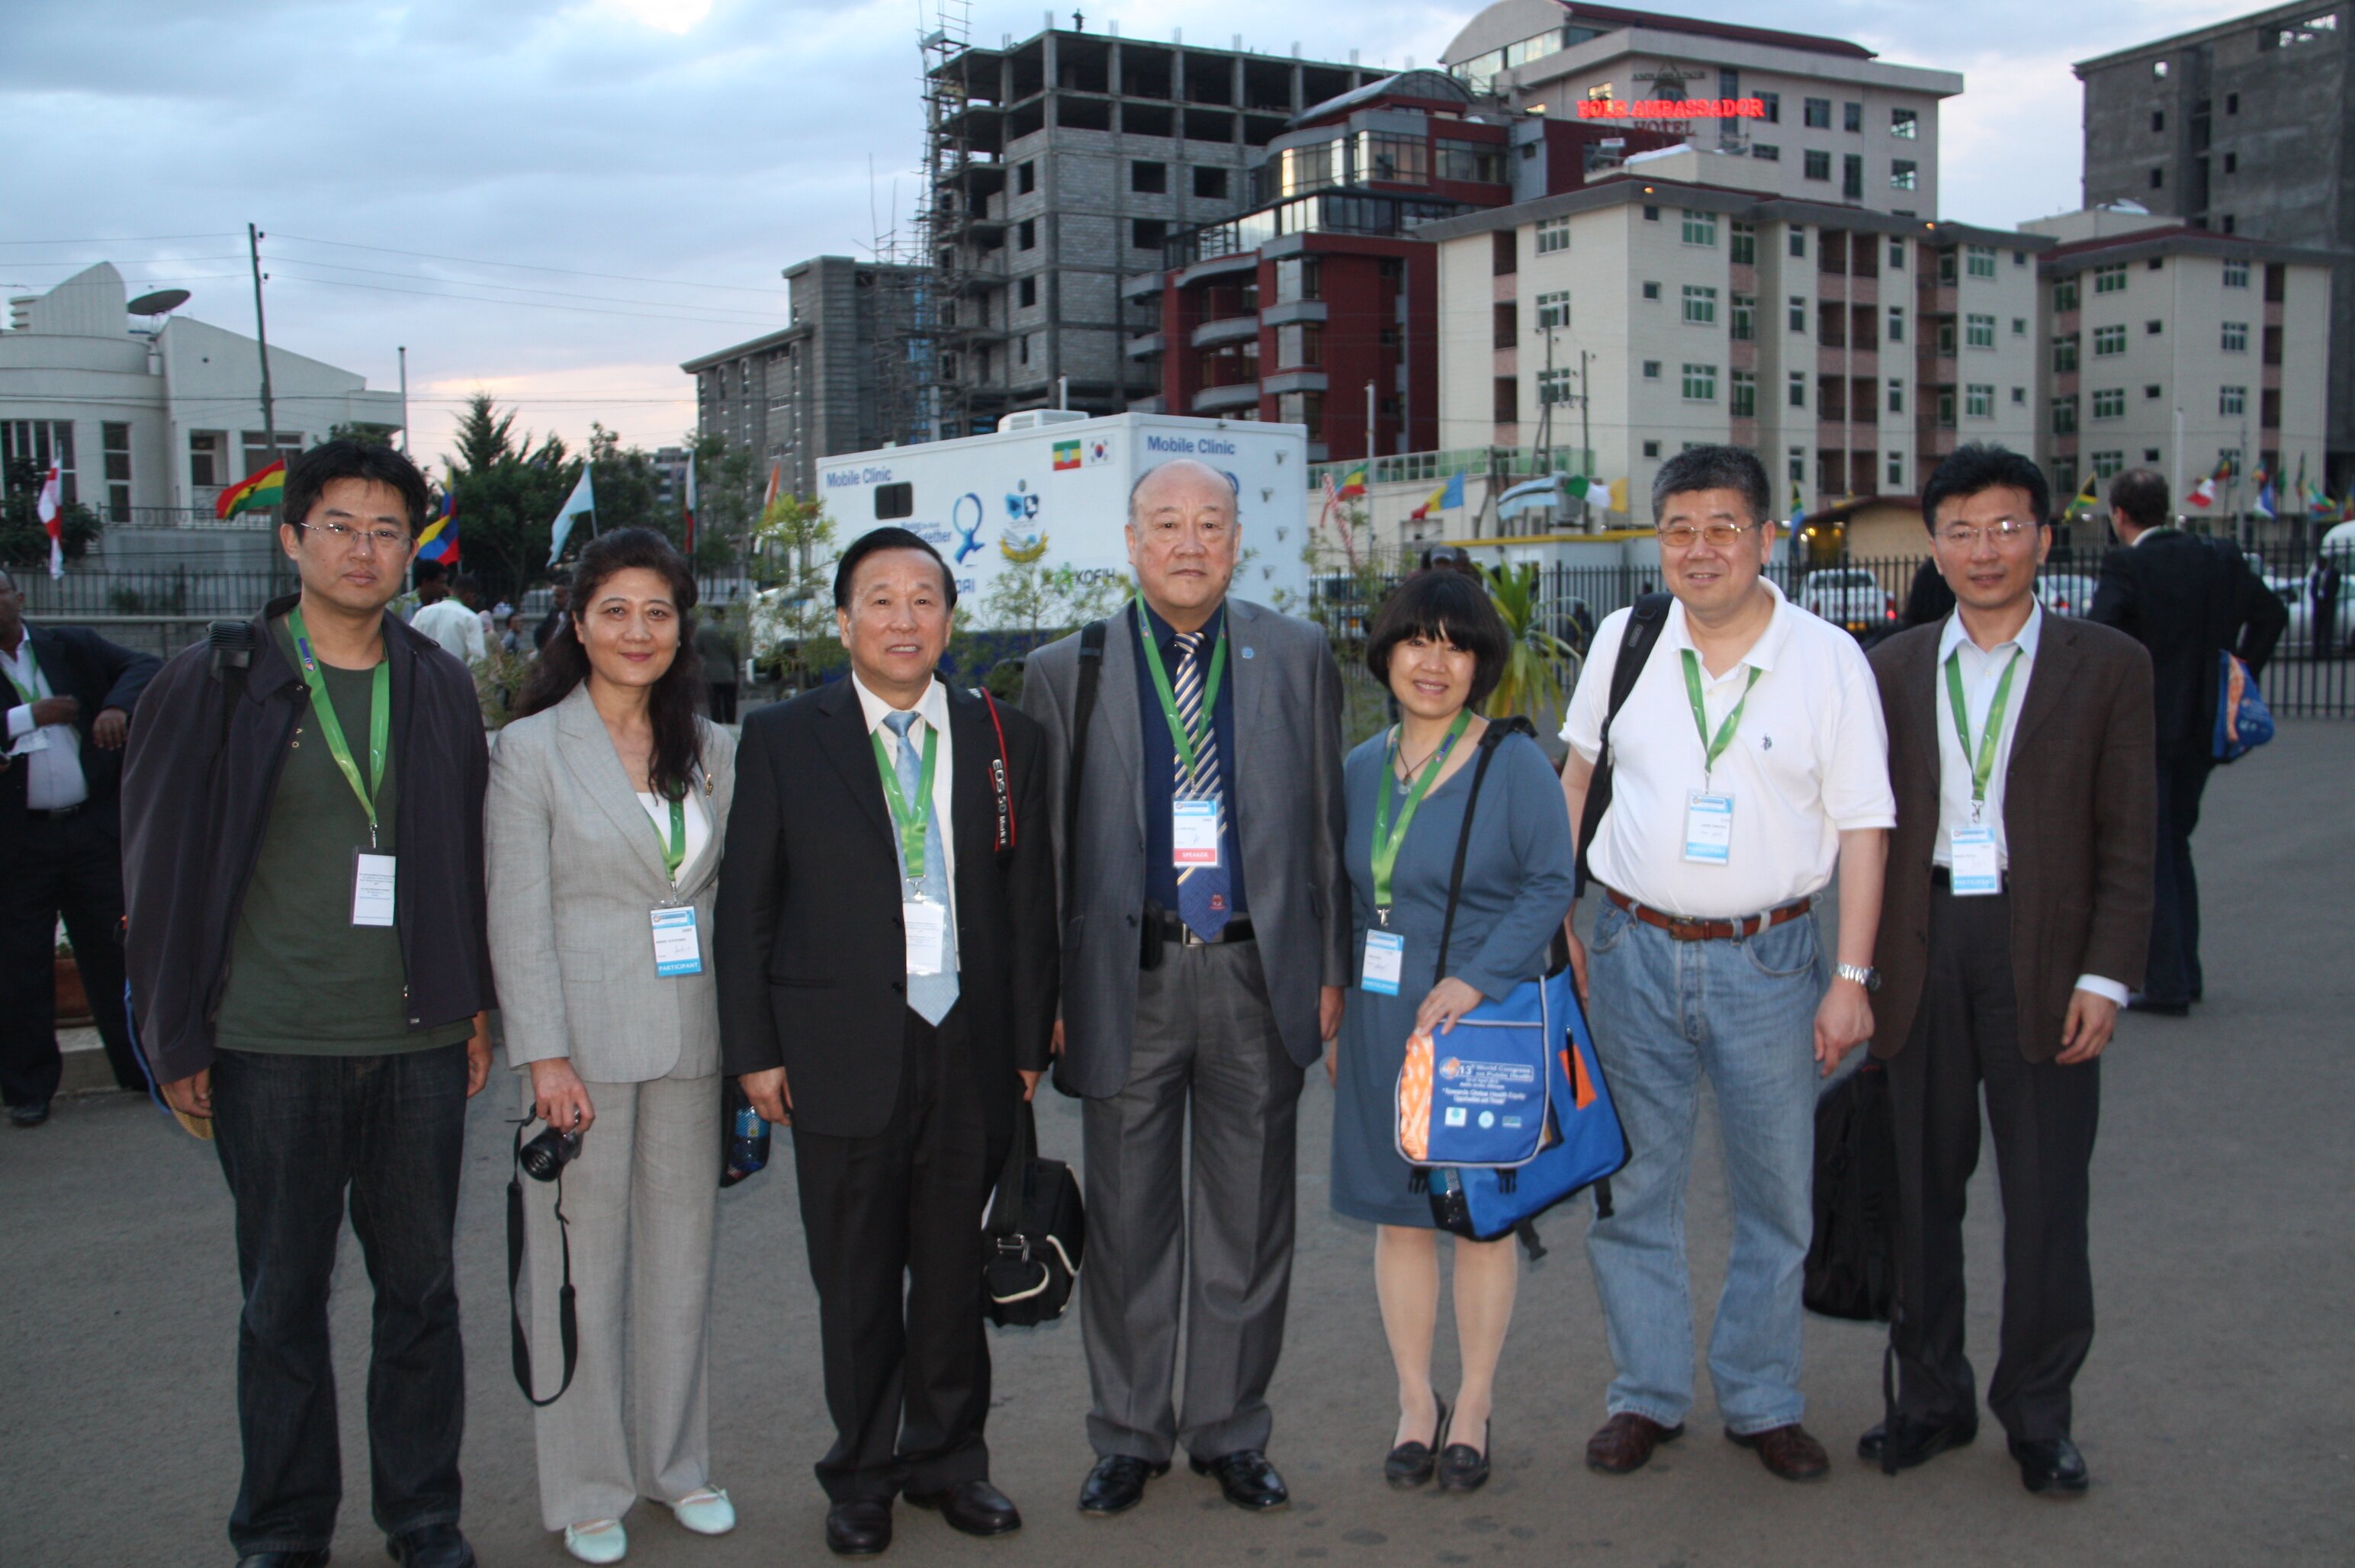 2013年,CCLH 代表团赴埃塞俄比亚参加第十三届世界公共卫生大会合影